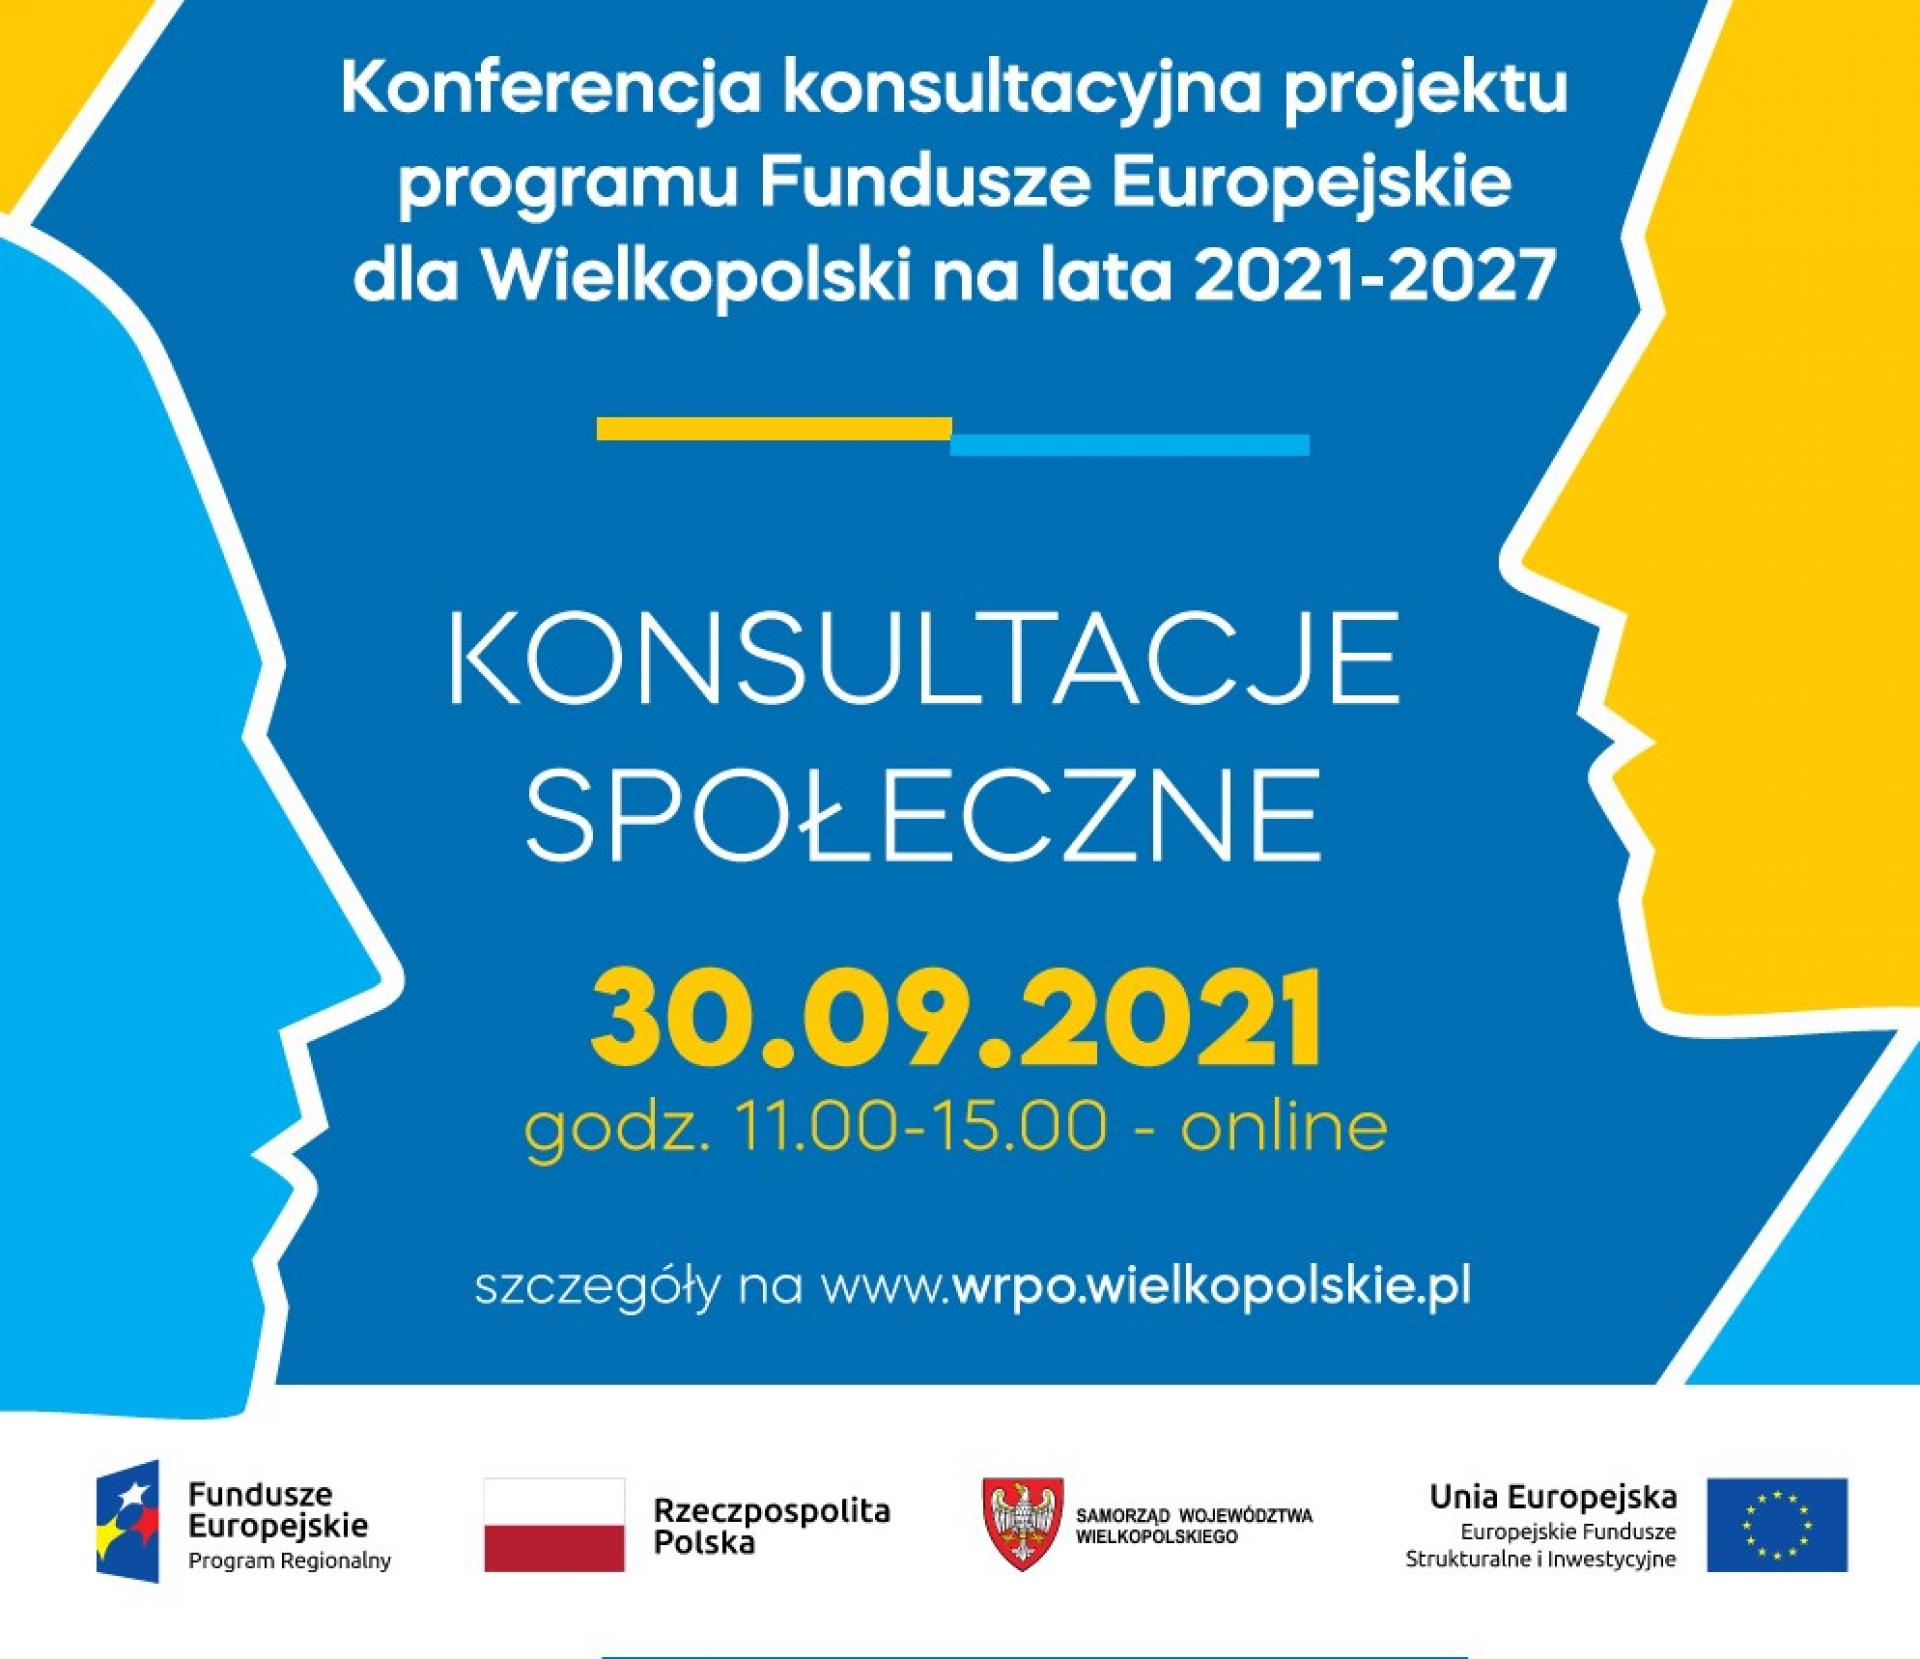 Konferencja konsultacyjna dla projektu Programu Fundusze Europejskie dla Wielkopolski na lata 2021-2027. 30.09.2021 r. - zobacz więcej